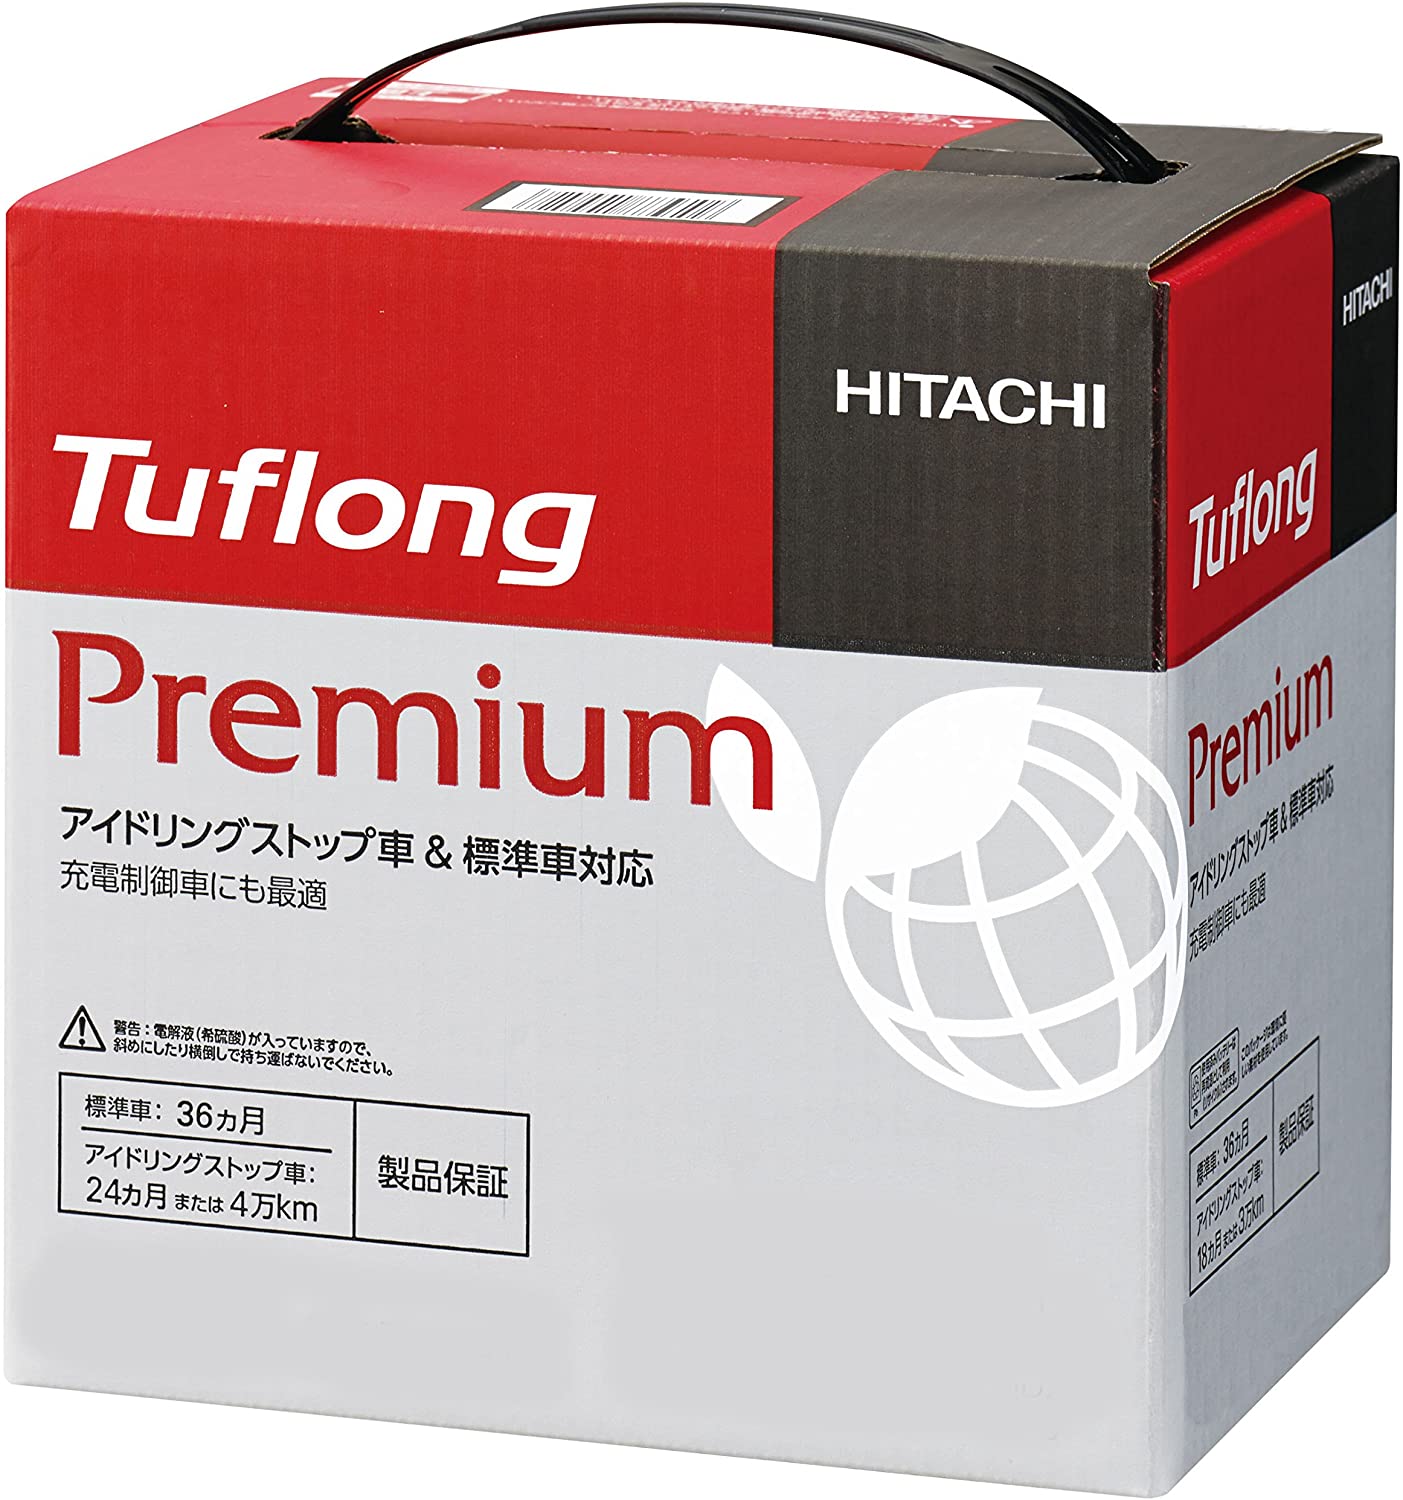 Hitachi 日立化成株式会社 国産車バッテリー アイドリングストップ車 標準車対応 Tuflong Premium Jp Aq 85 95d23l Jpaq85 95d23 お宝ワールド